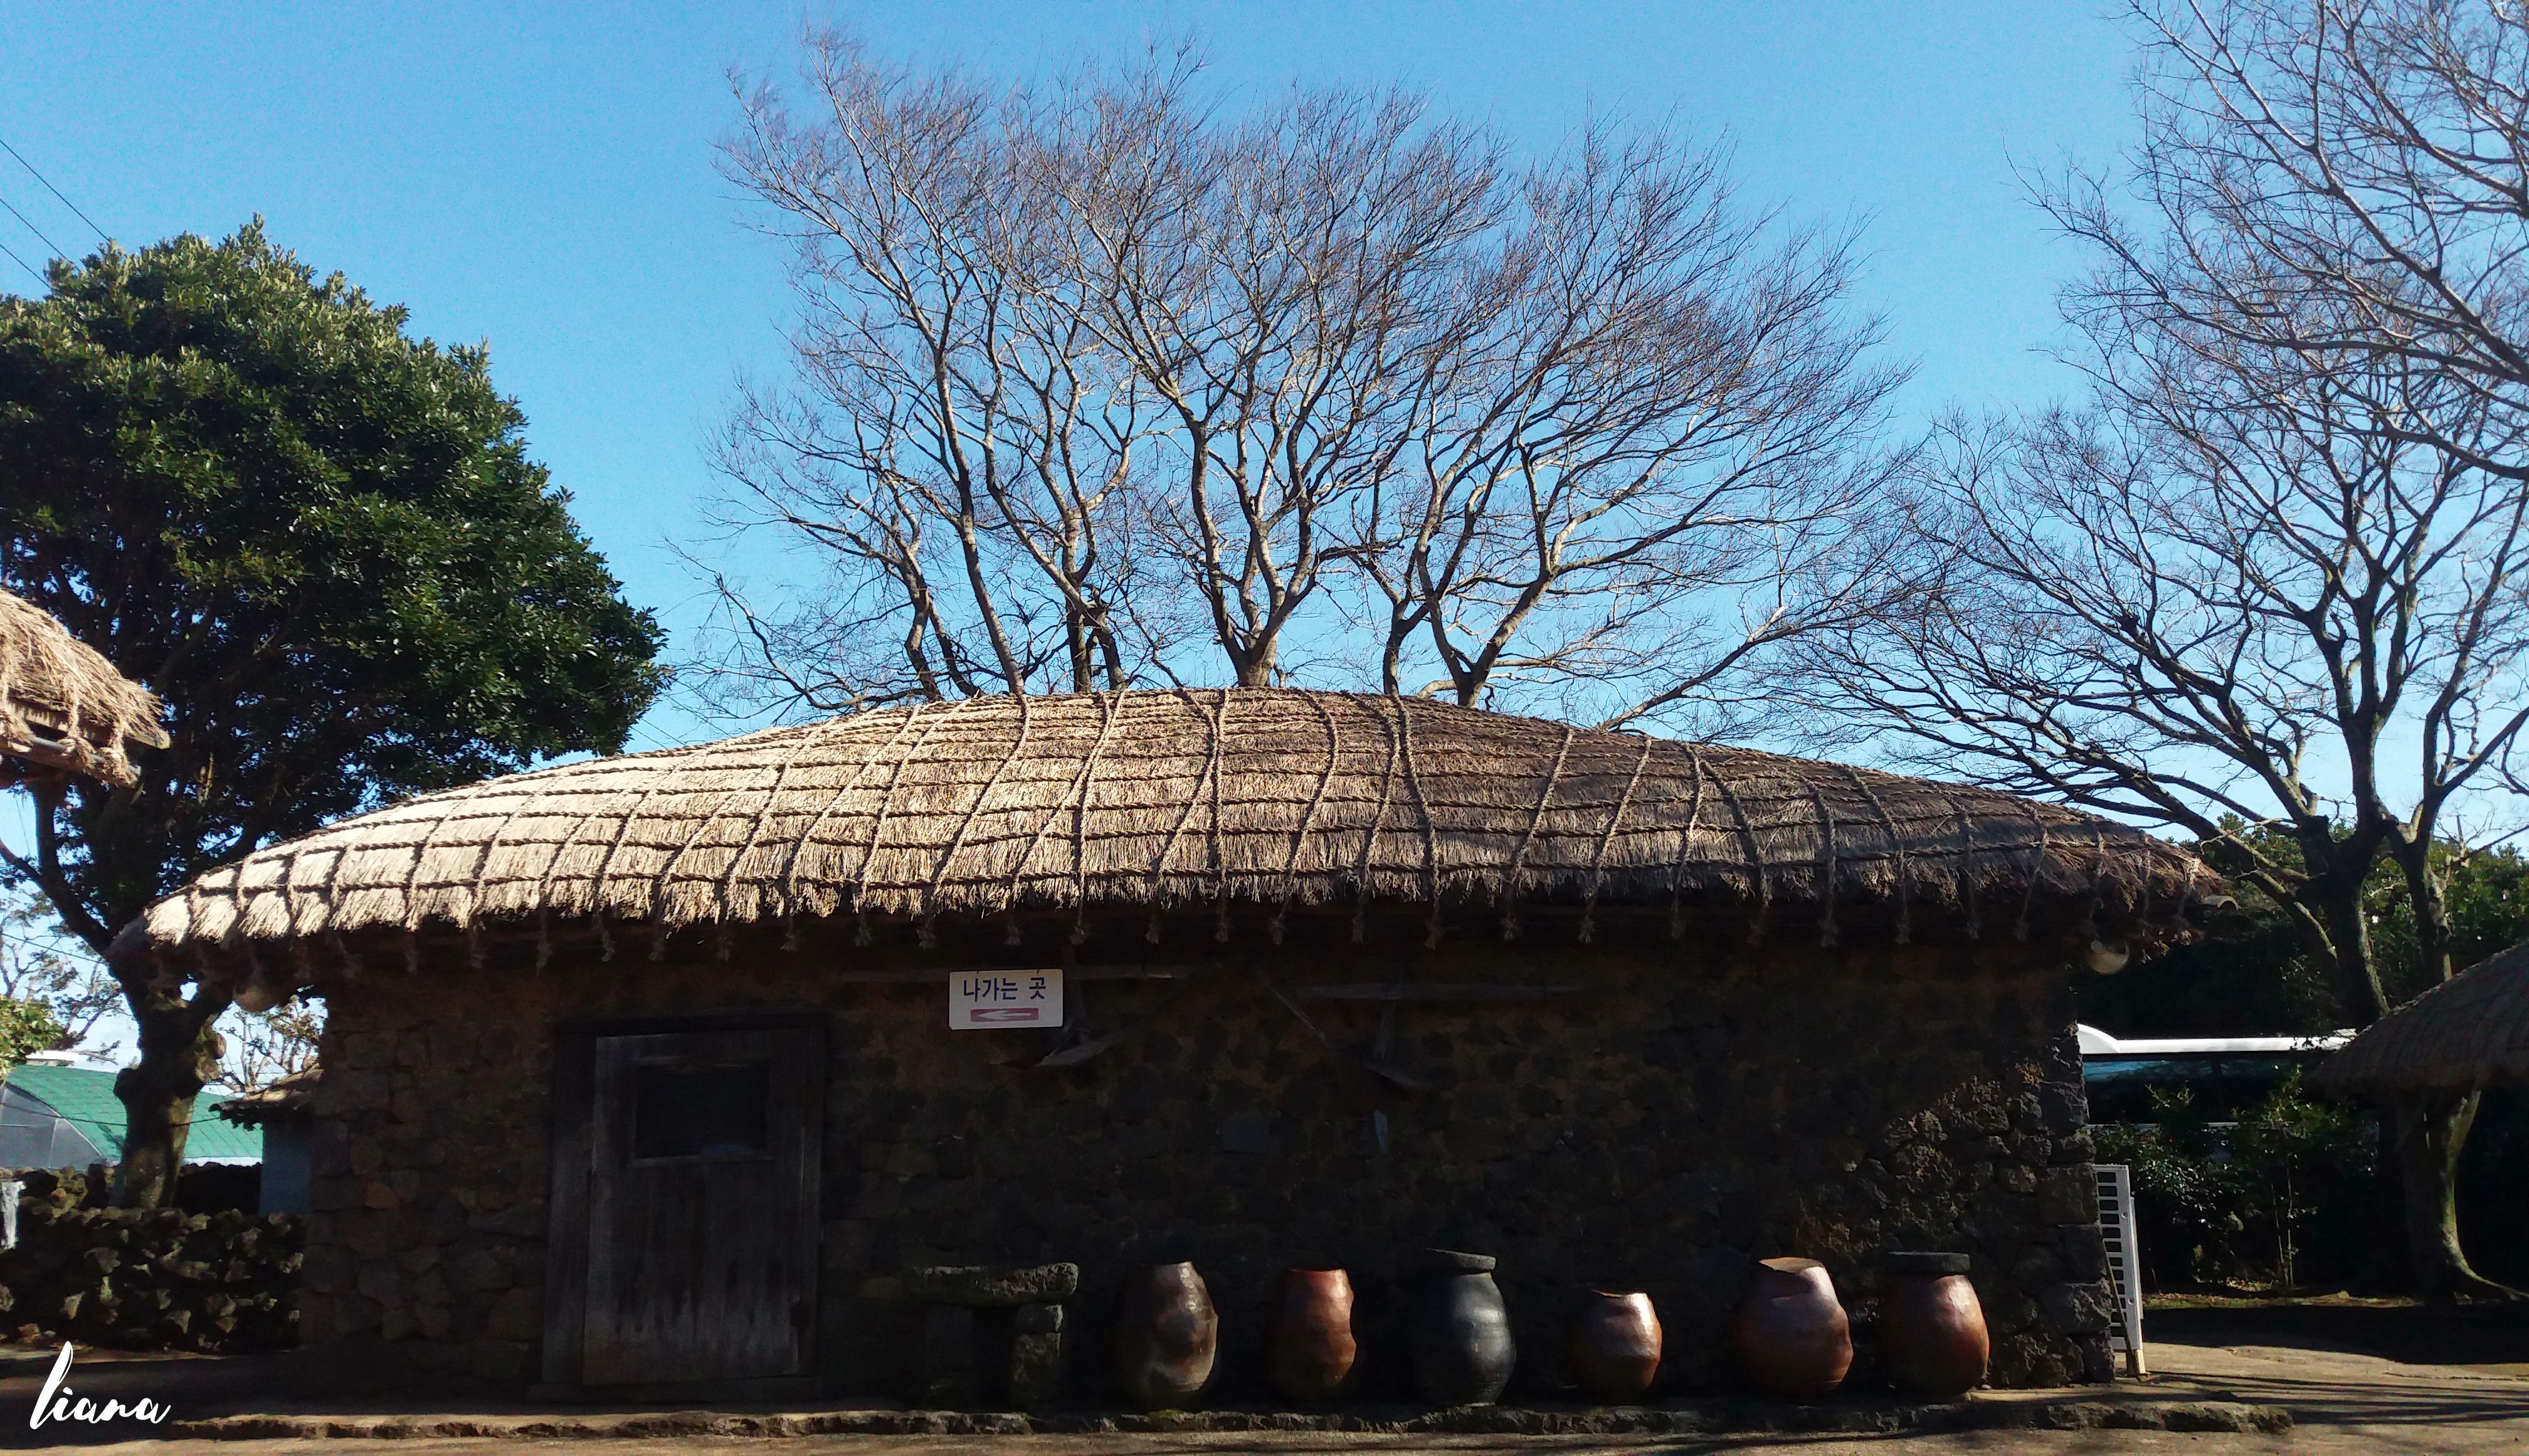 Rumah tradisional orang Korea di Jeju, tempat wisata di Jeju